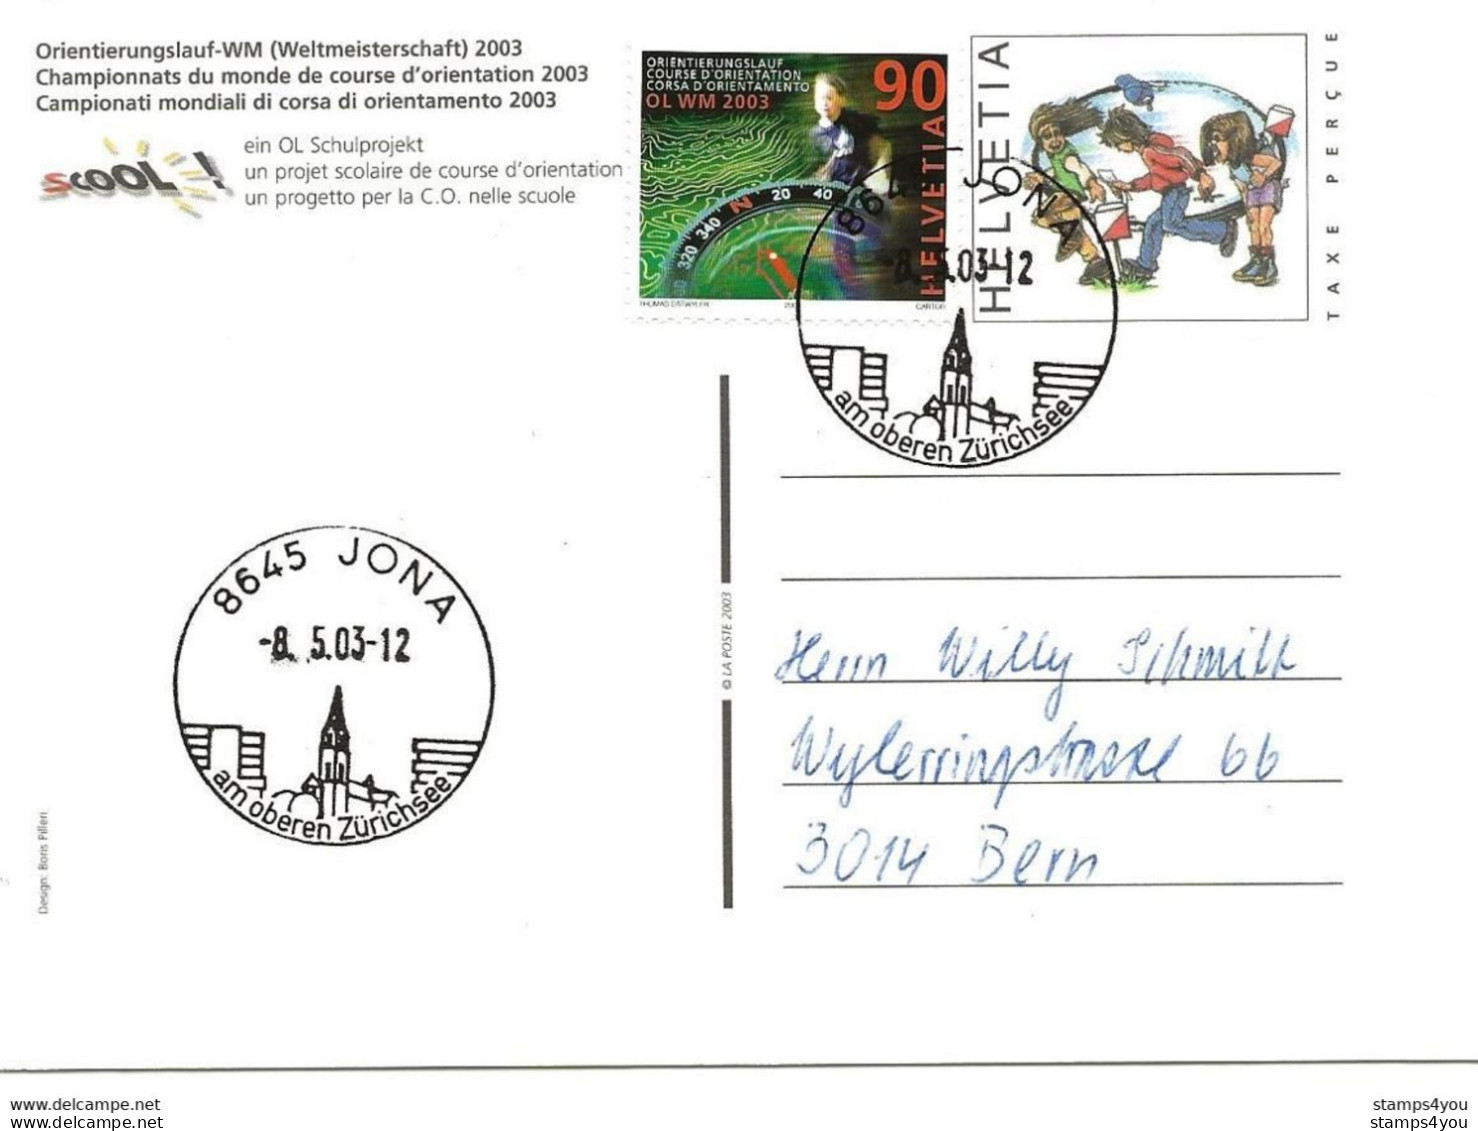 433 - 30 - Entier Postal  "Champ. Monde Course Orientation 2003" Cachets Illustrés Jona 2003 - Athletics